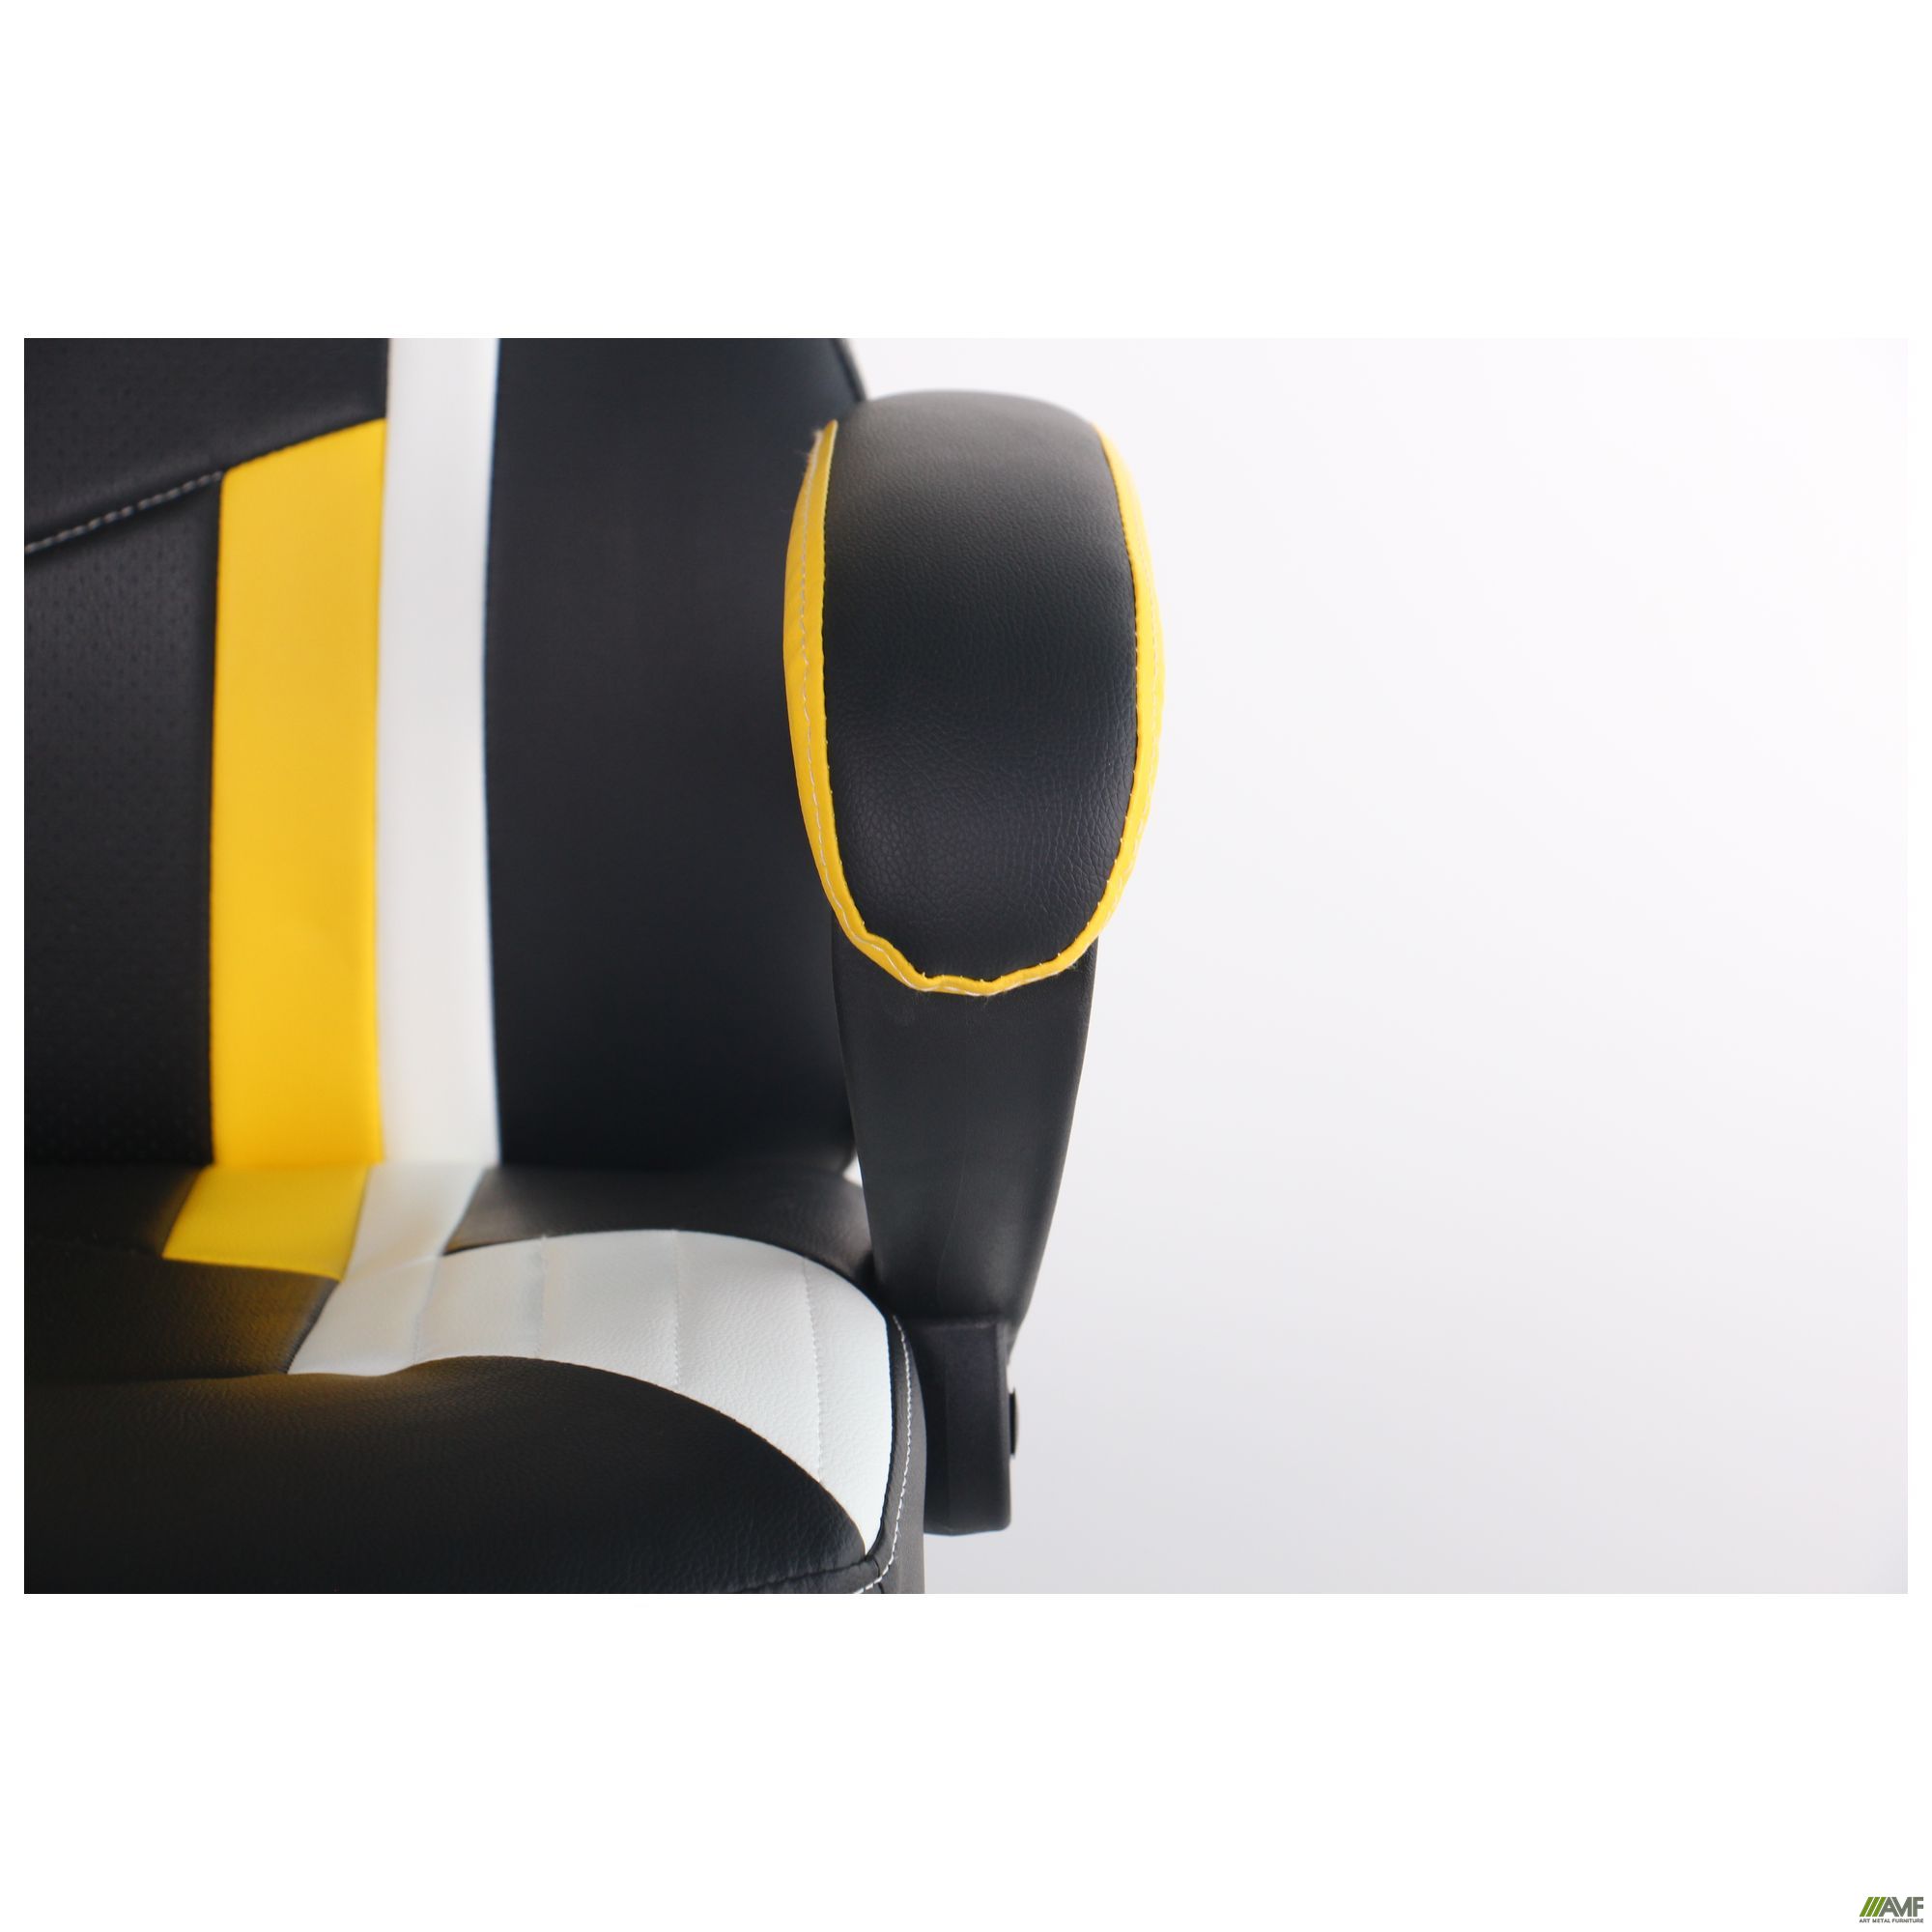 Фото 9 - Крісло VR Racer Dexter Jolt чорний/жовтий 